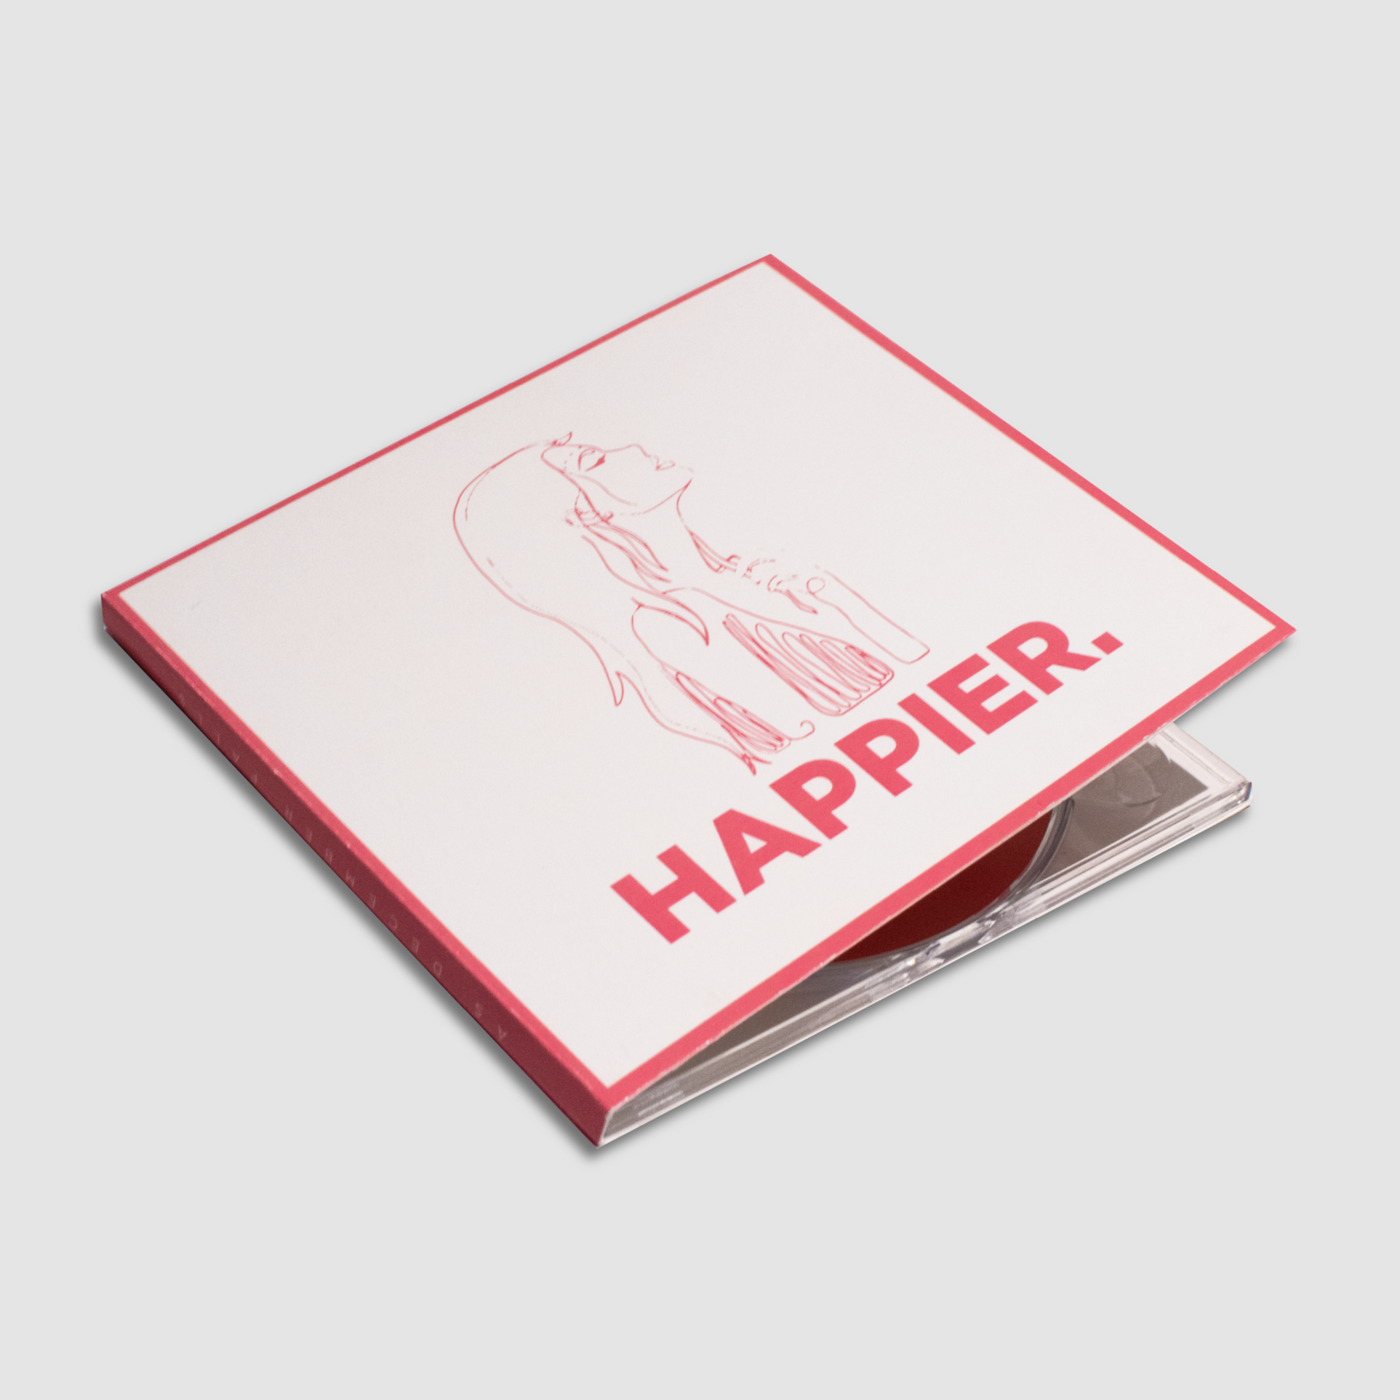 Happier. - Deluxe CD - US